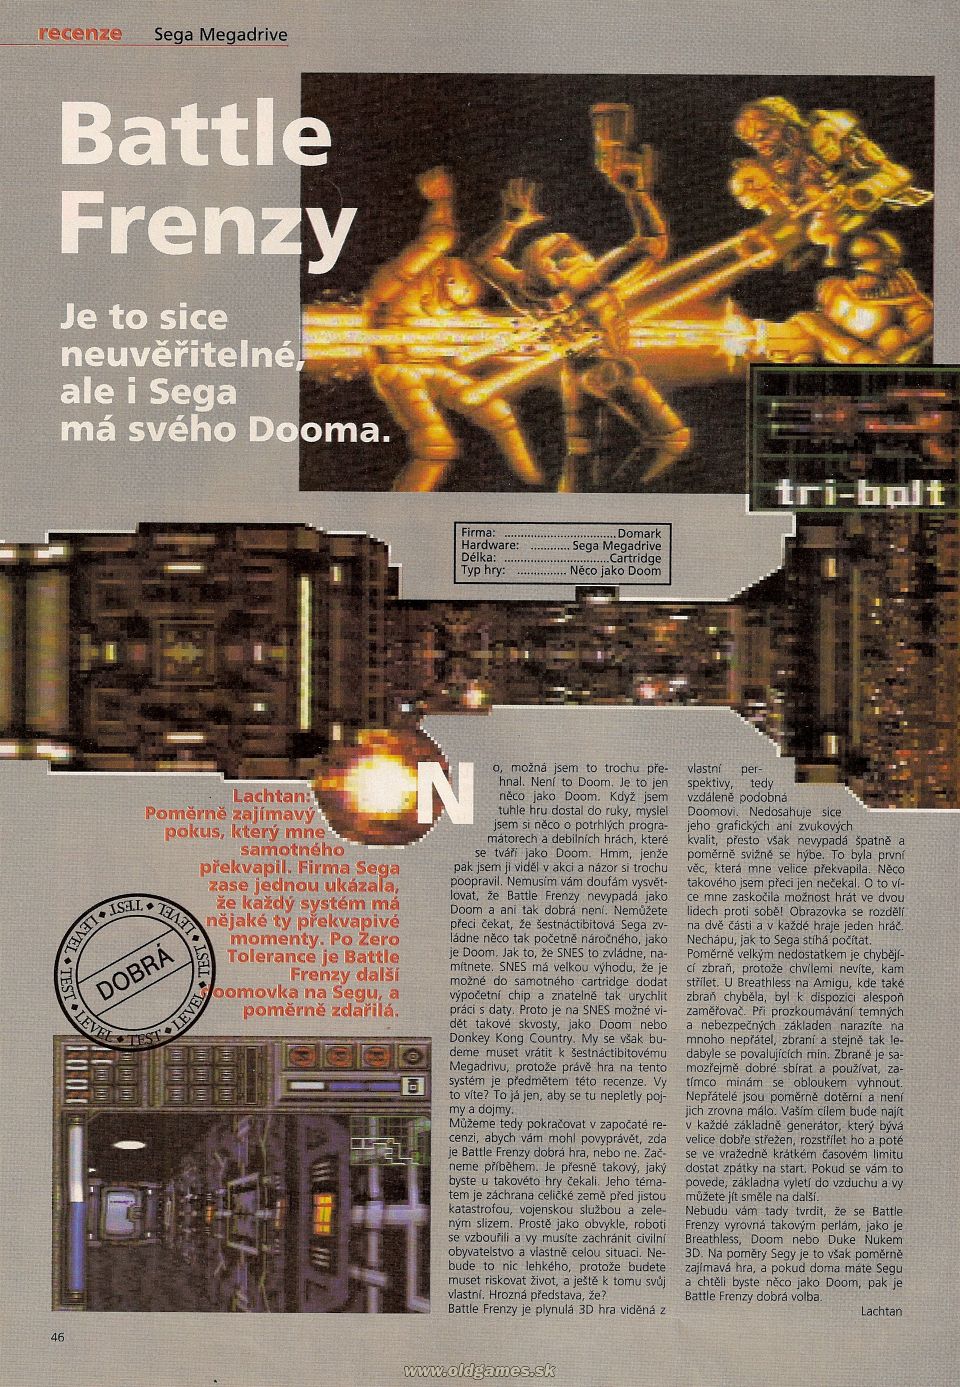 Battle Frenzy (Genesis)